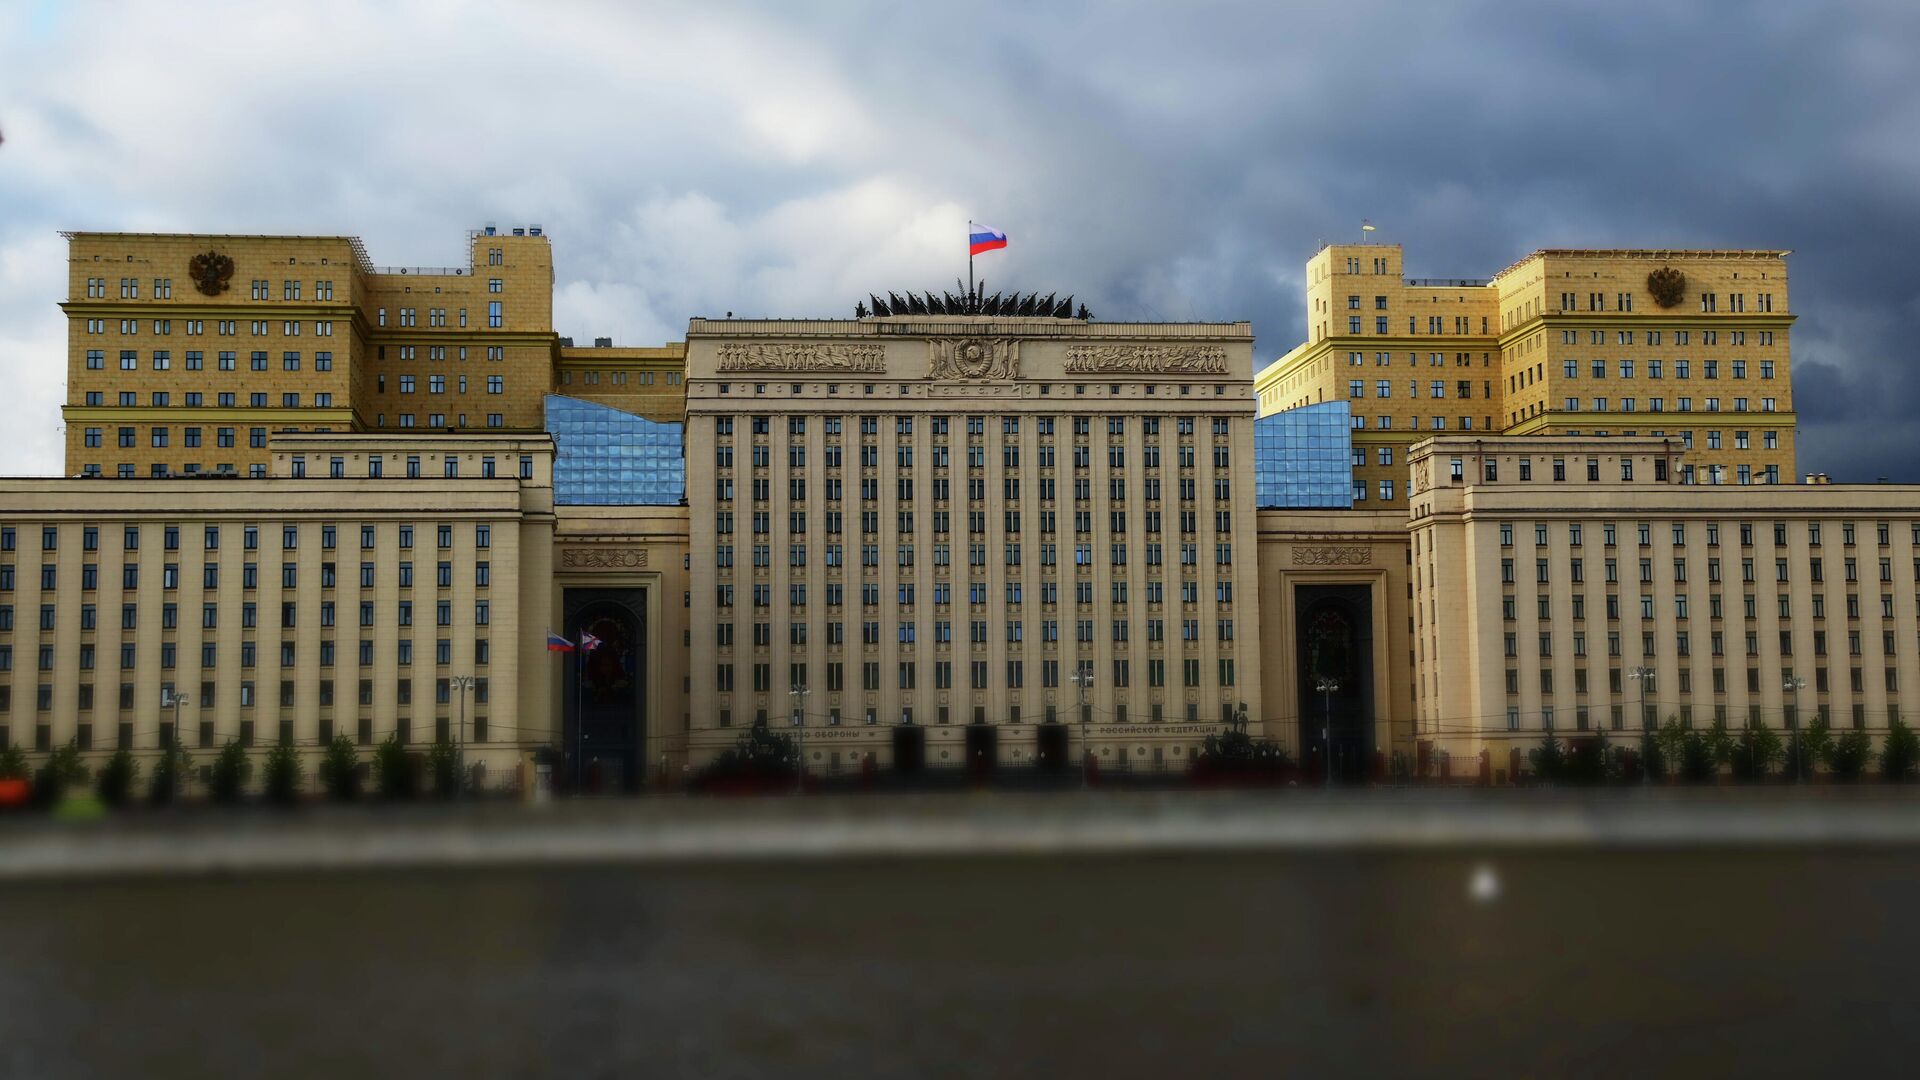 ՌԴ Պաշտպանության նախարարության շենքը Մոսկվայում - Sputnik Արմենիա, 1920, 22.09.2022